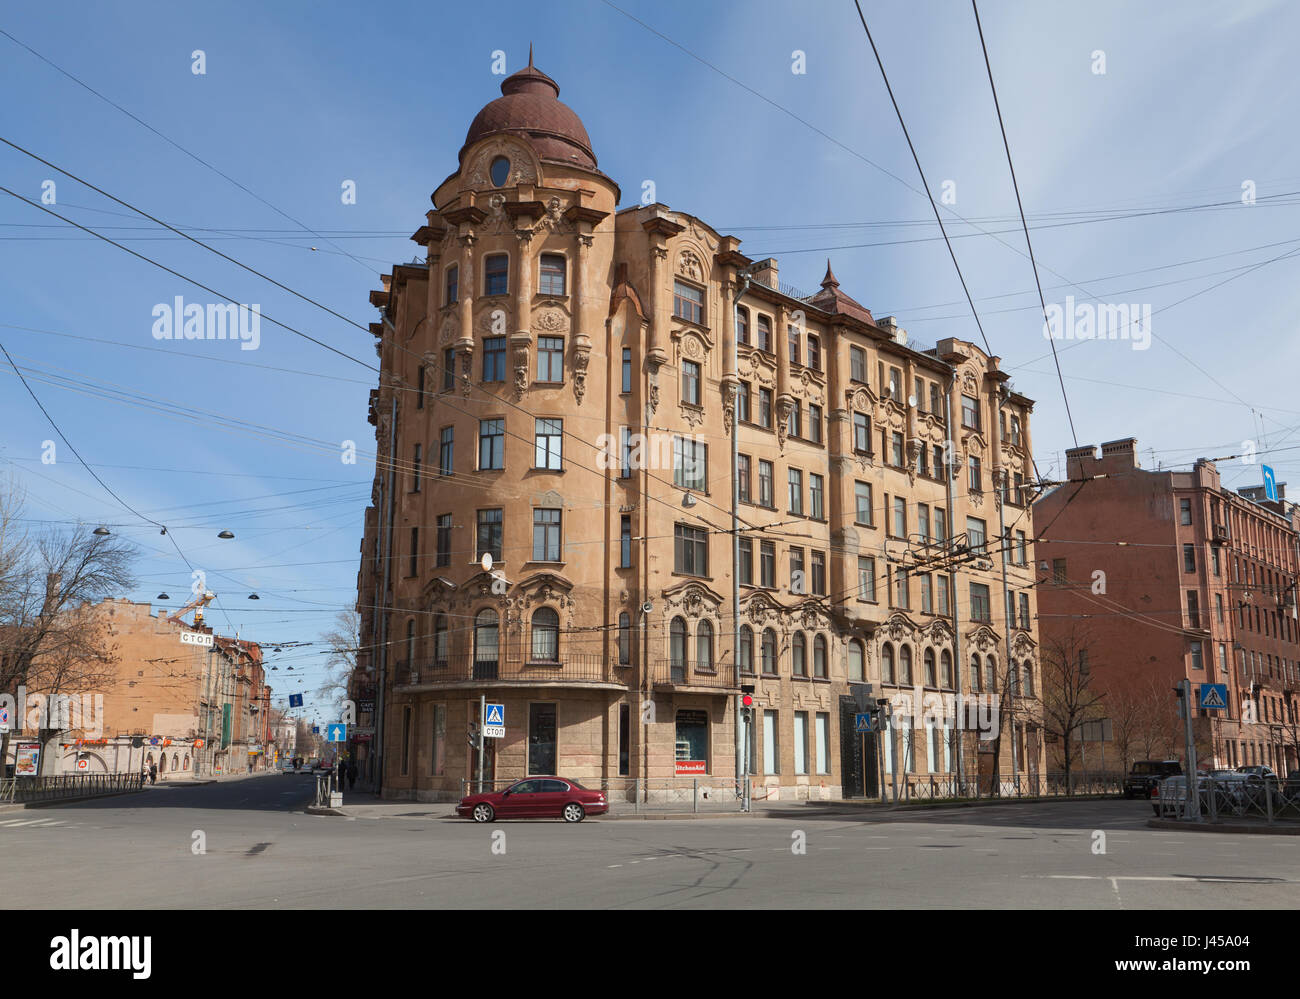 Crossroads between Sjezhinskaya Street and Bolshaya Pushkarskaya Street, St. Petersburg, Russia. Stock Photo